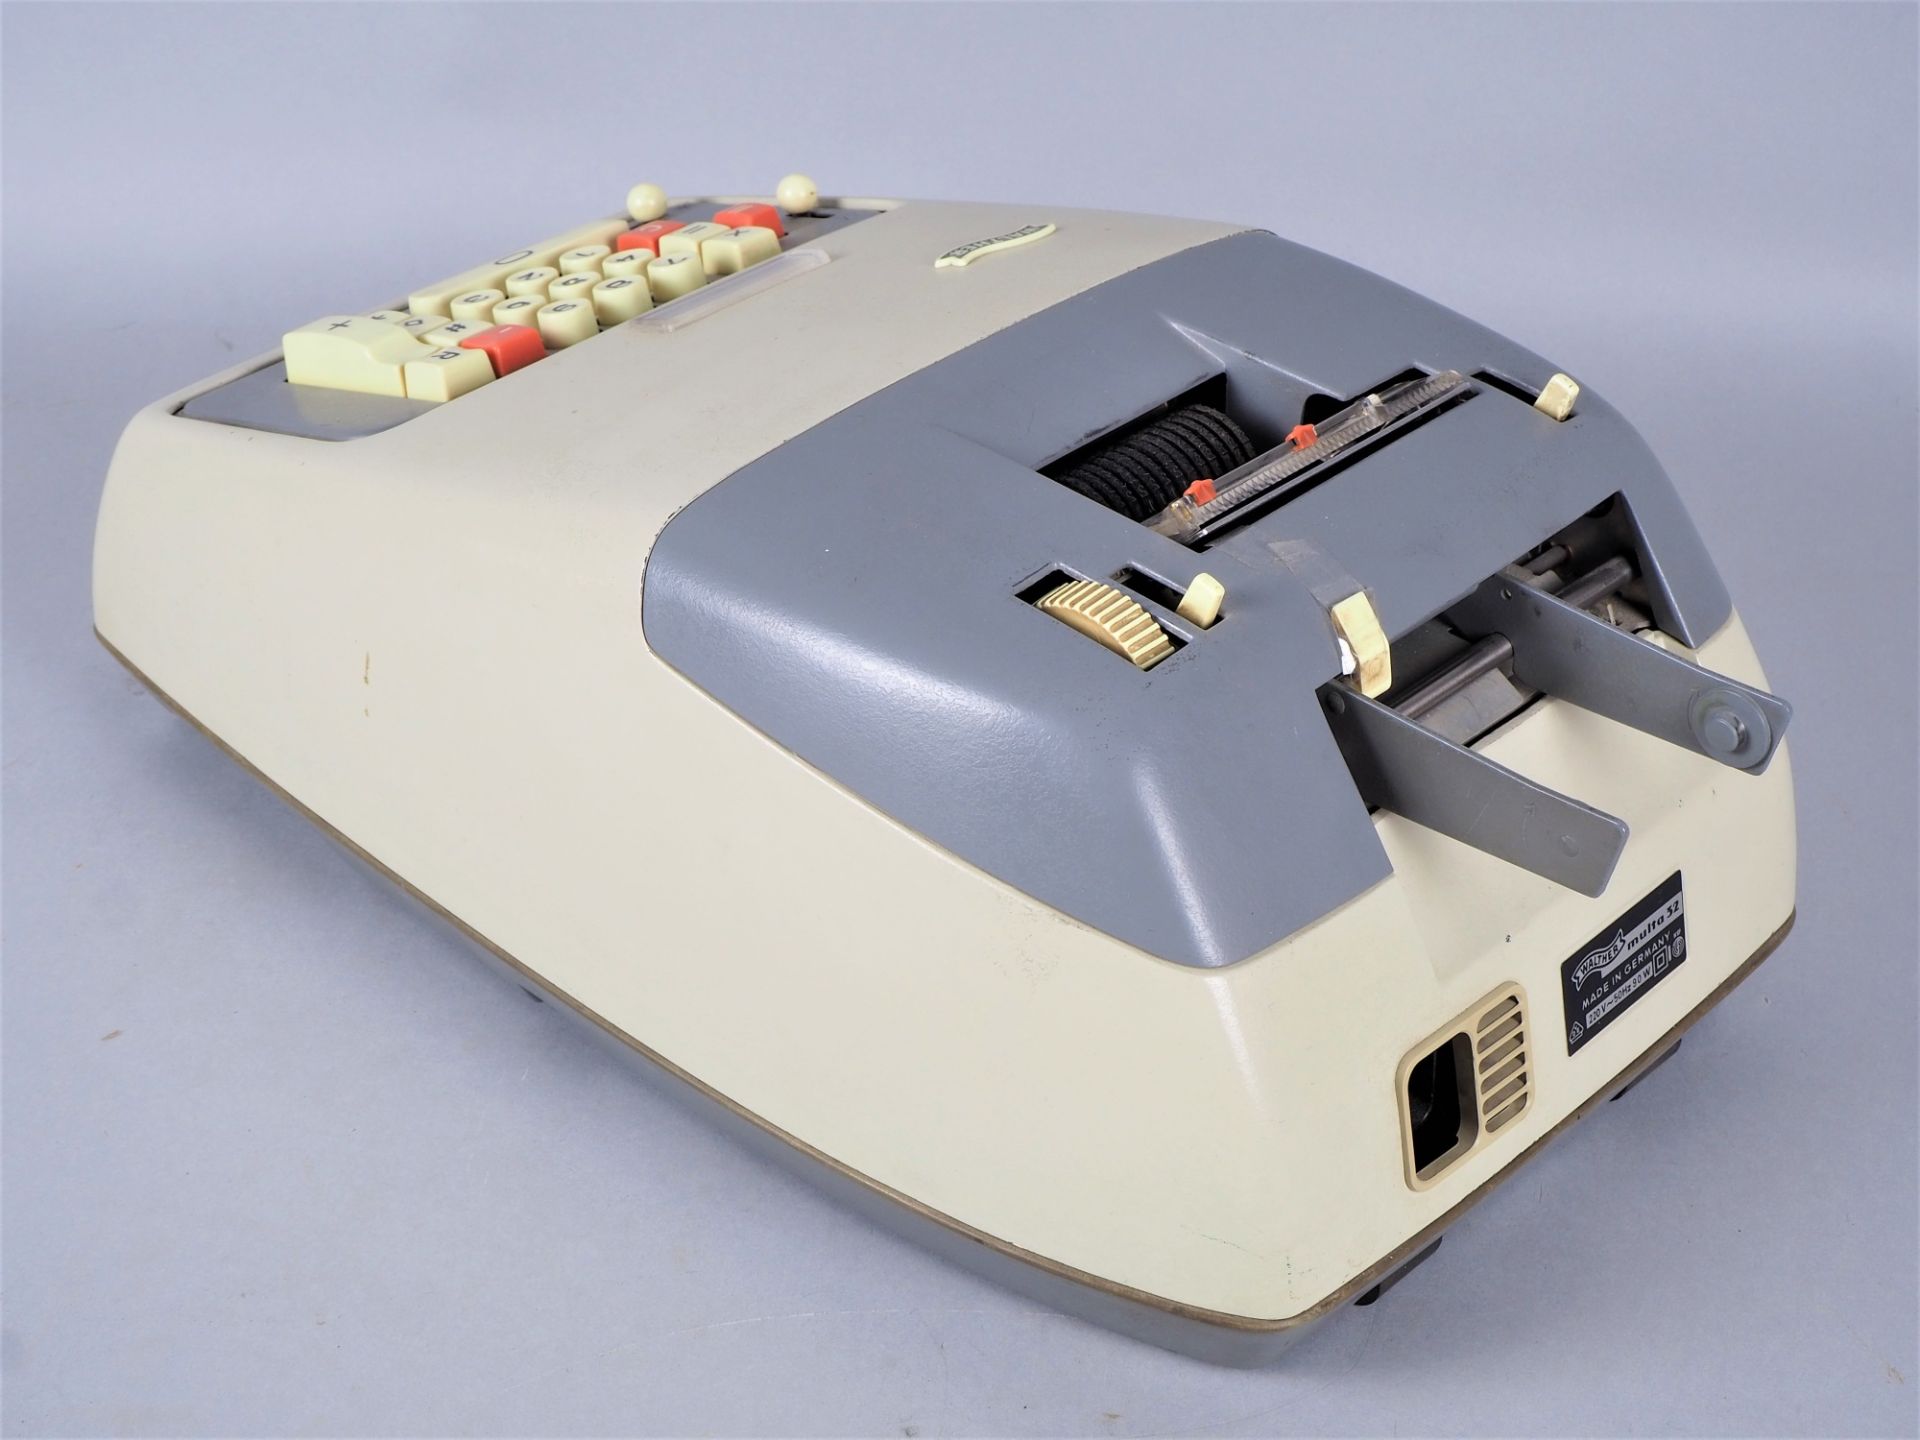 WALTHER Multa 32, calculating machine around 1960 - Image 2 of 3